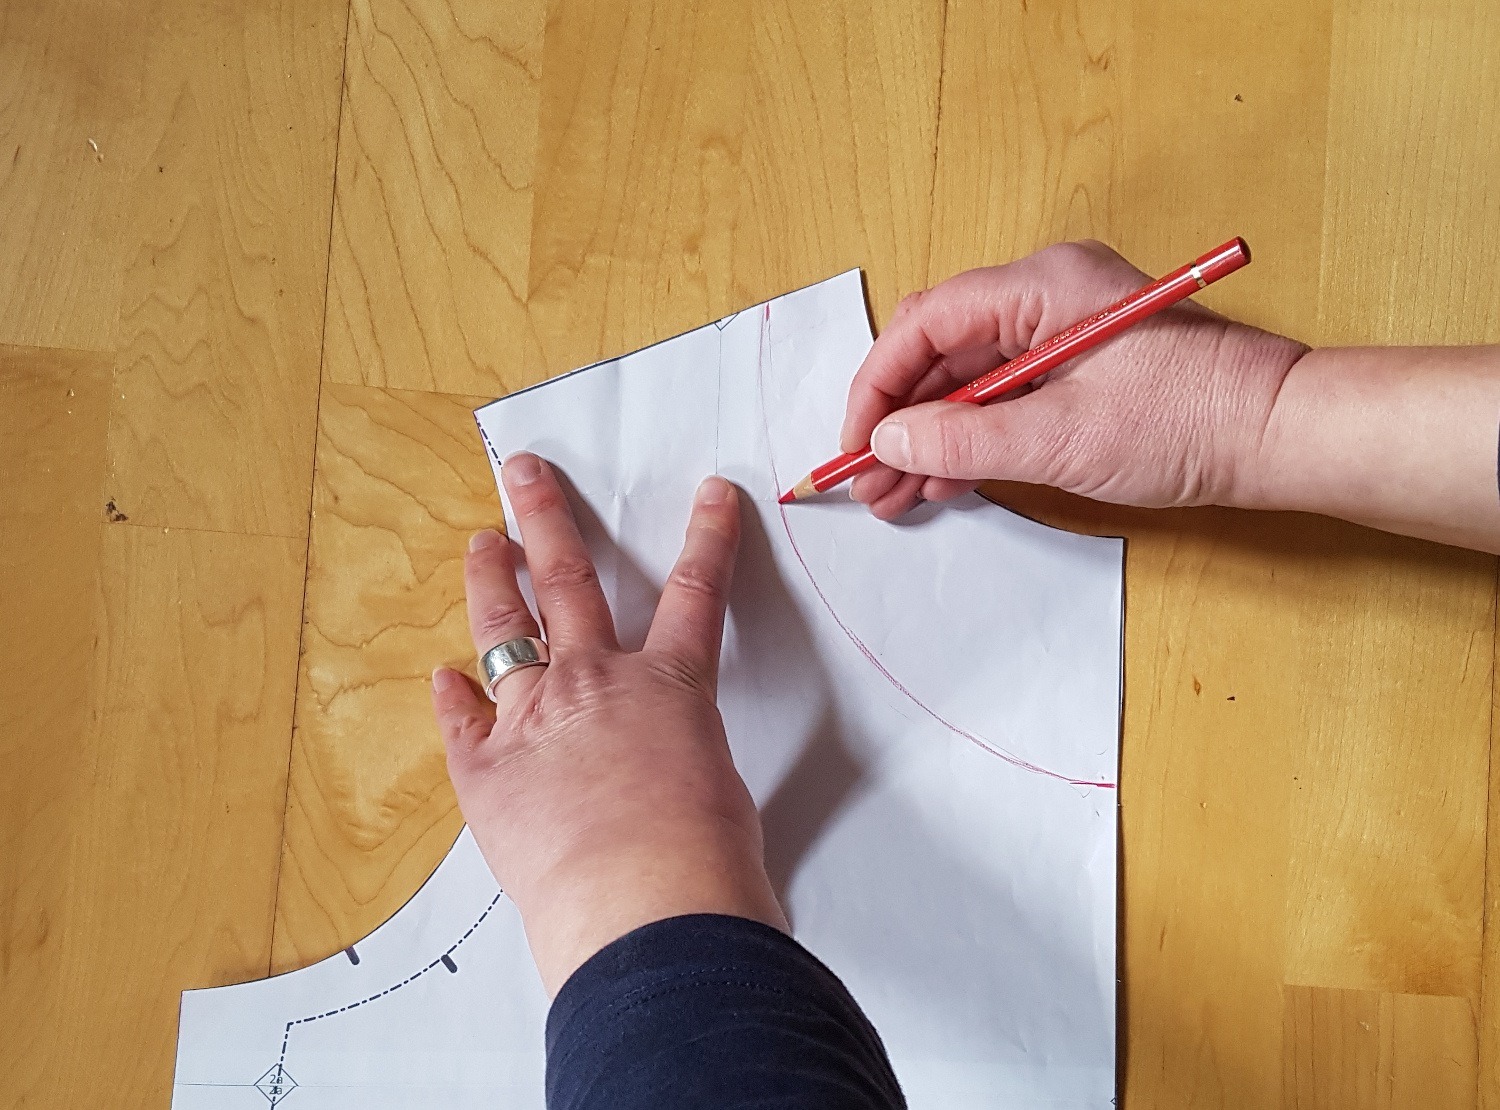 Mit einem roten Stift zeichnet Sabine die neue Ausschnittform auf das Vorderteil-Schnittteil. Sie verbindet die Punkte in der vorderen Mitte und am Schulterpunkt mit einer schönen Kurve.